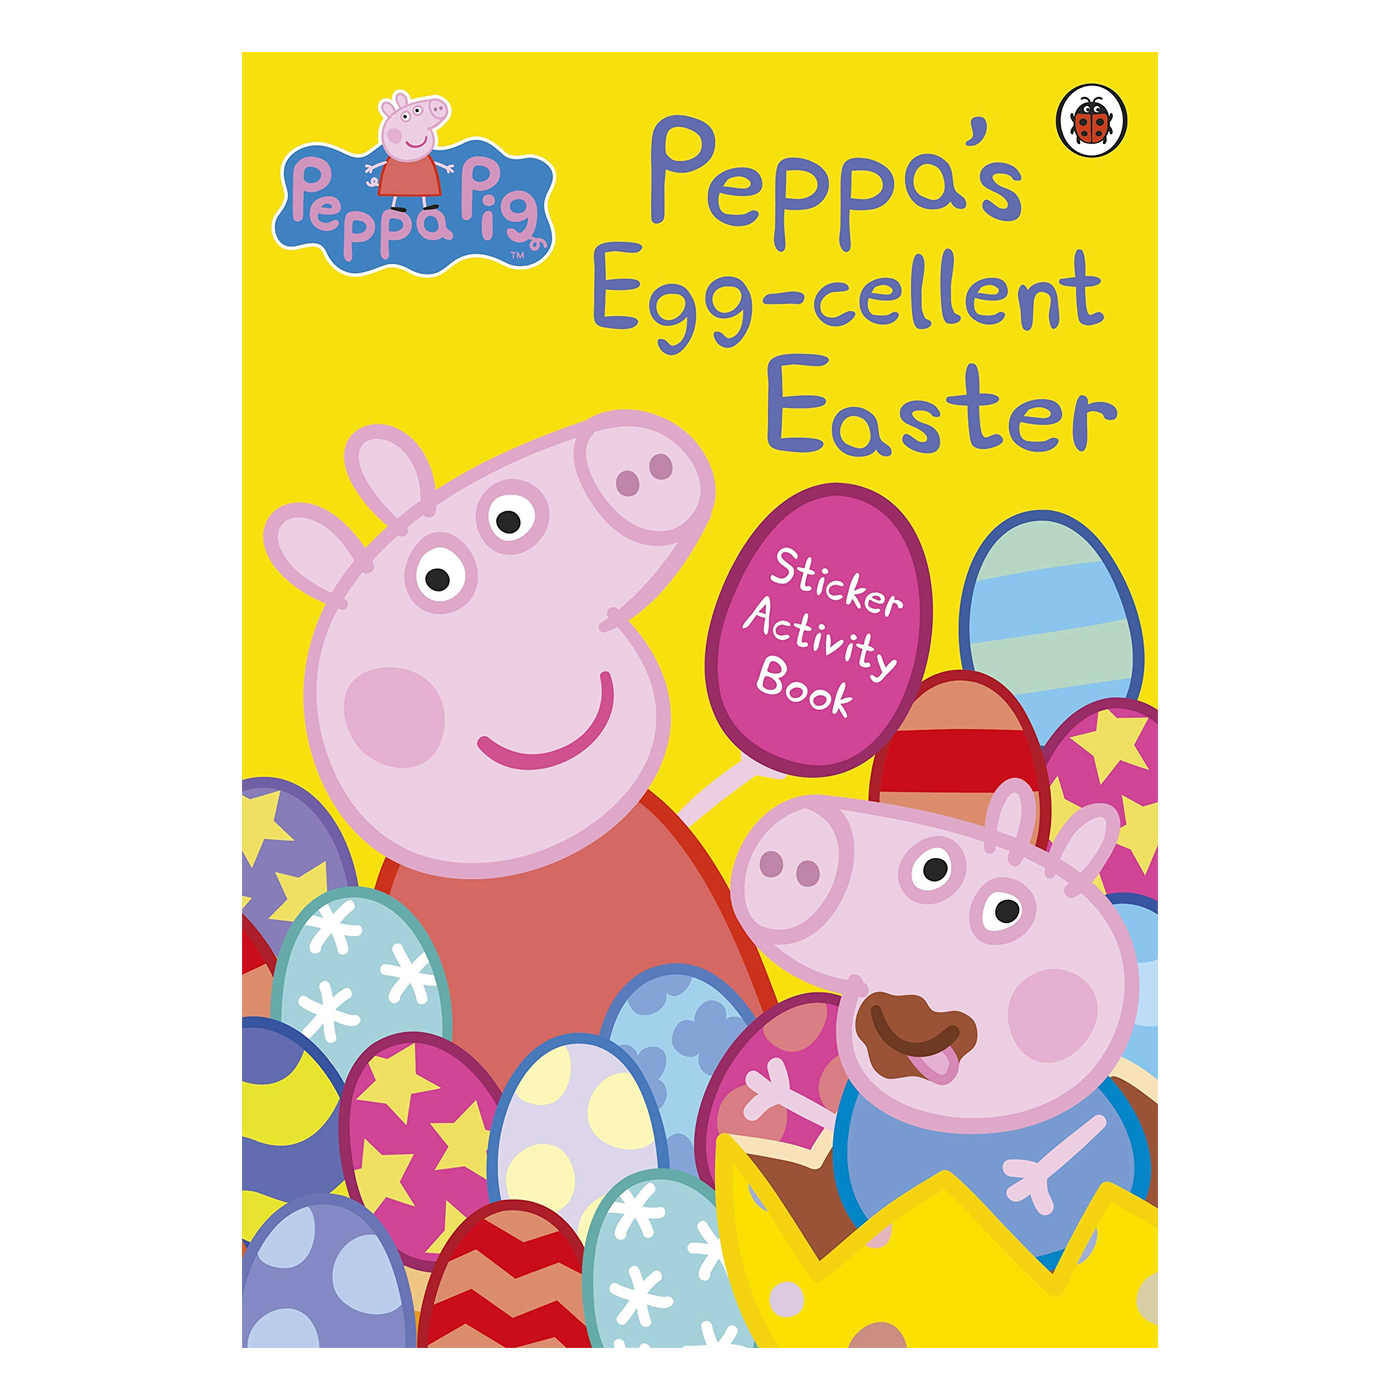 LADYBIRD Peppa Pig: Peppa's Egg-cellent Easter Sticker Activity Book